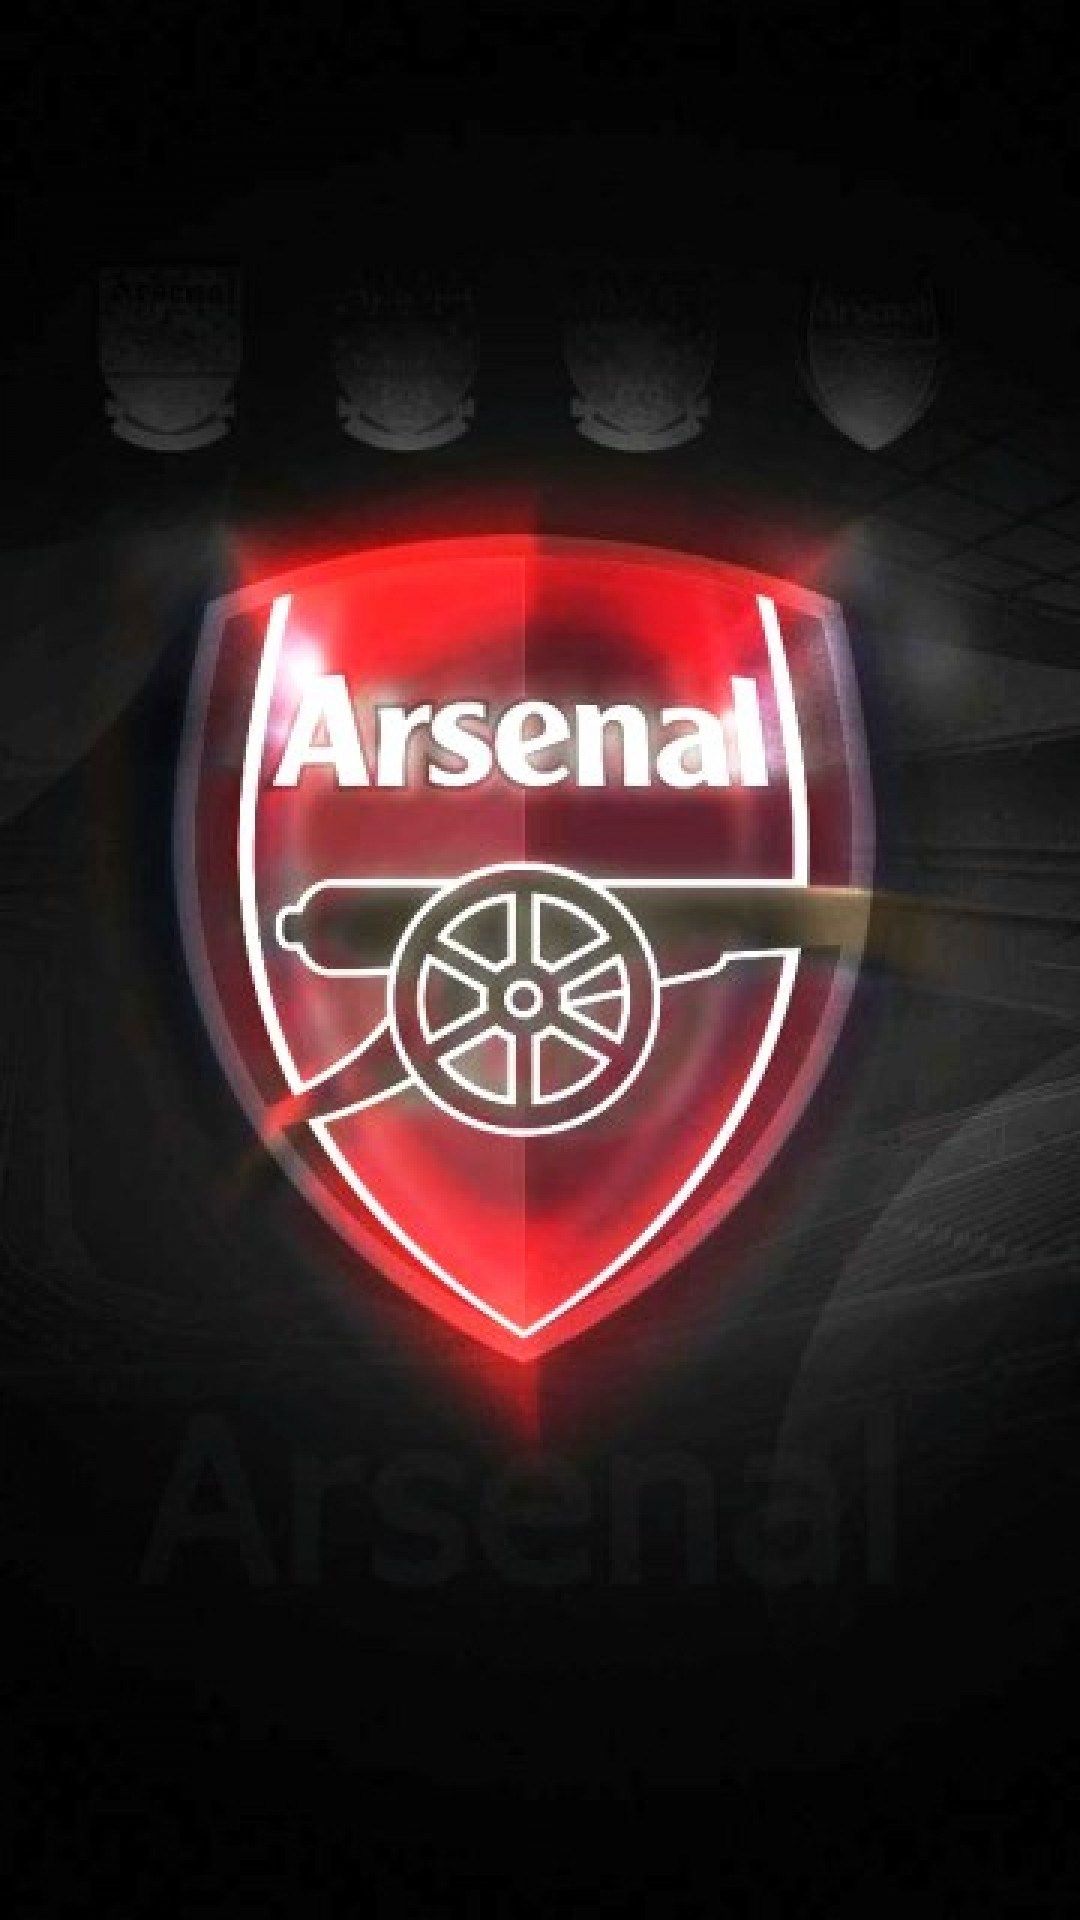 arsenal logo wallpaper full hd for mobile ololoshenka Arsenal